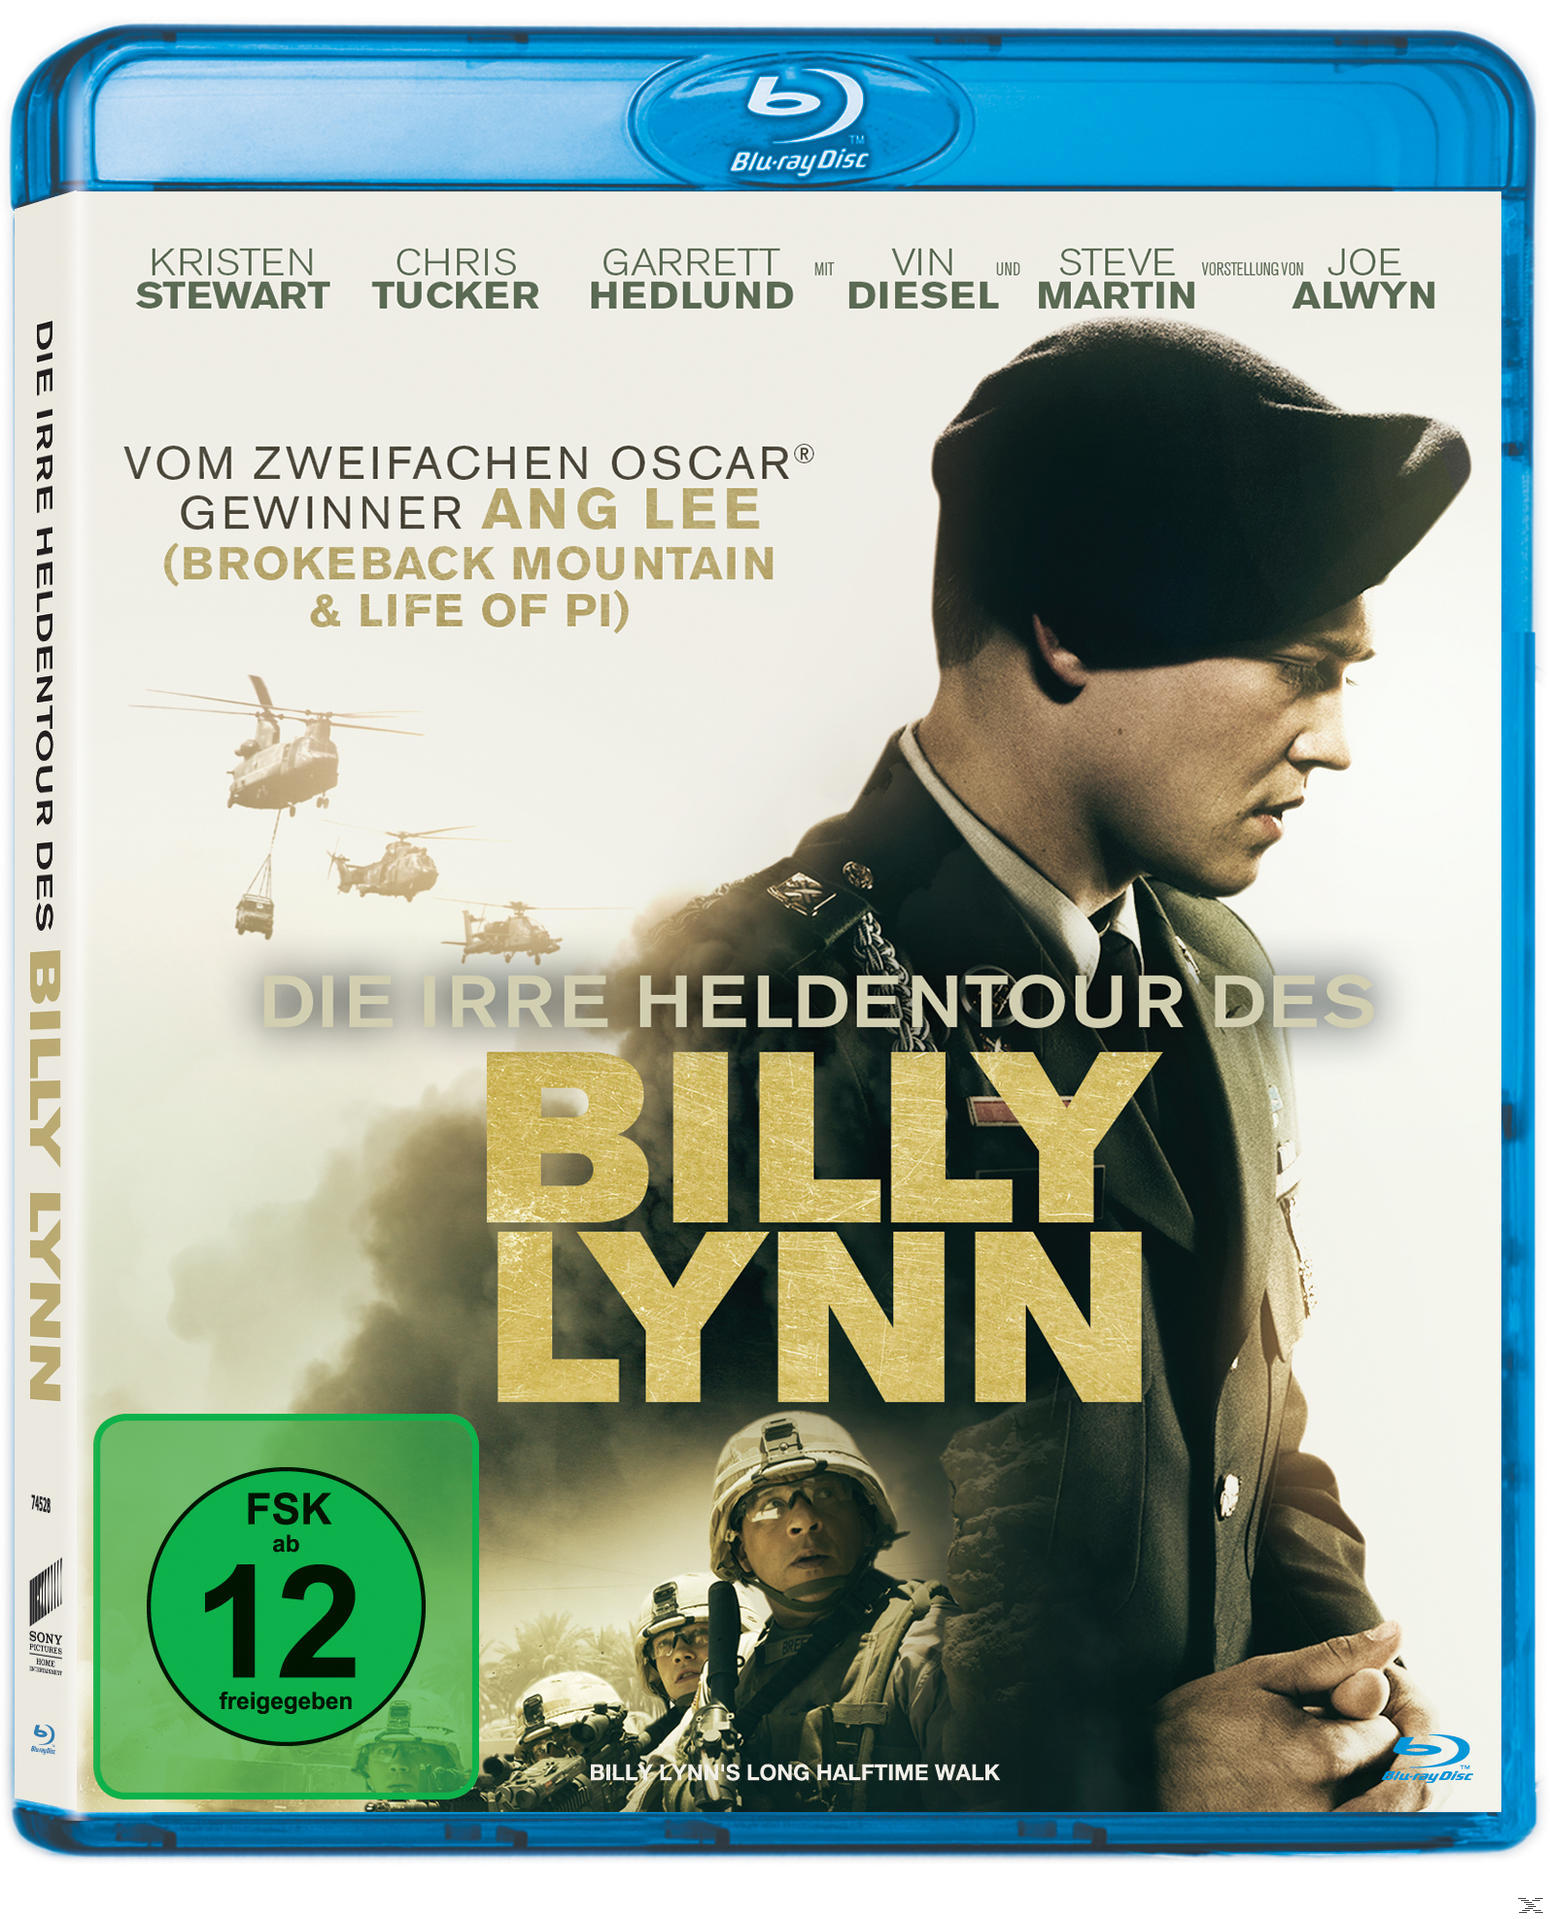 Blu-ray irre Lynn Billy Die des Heldentour